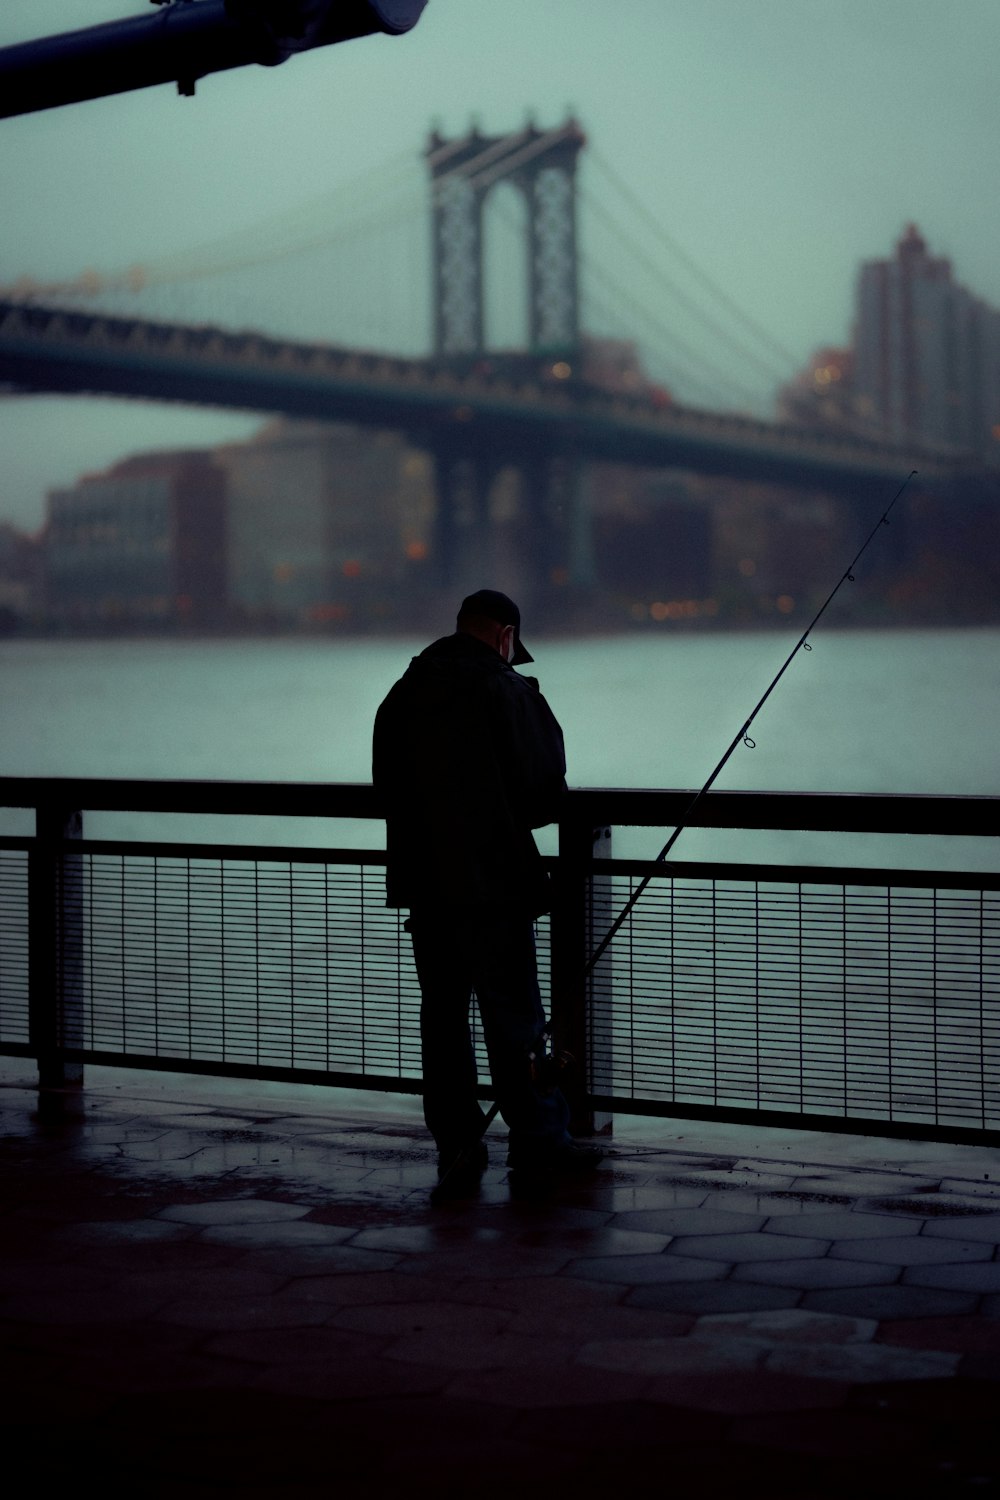 Mann in schwarzer Jacke tagsüber auf Brücke stehend